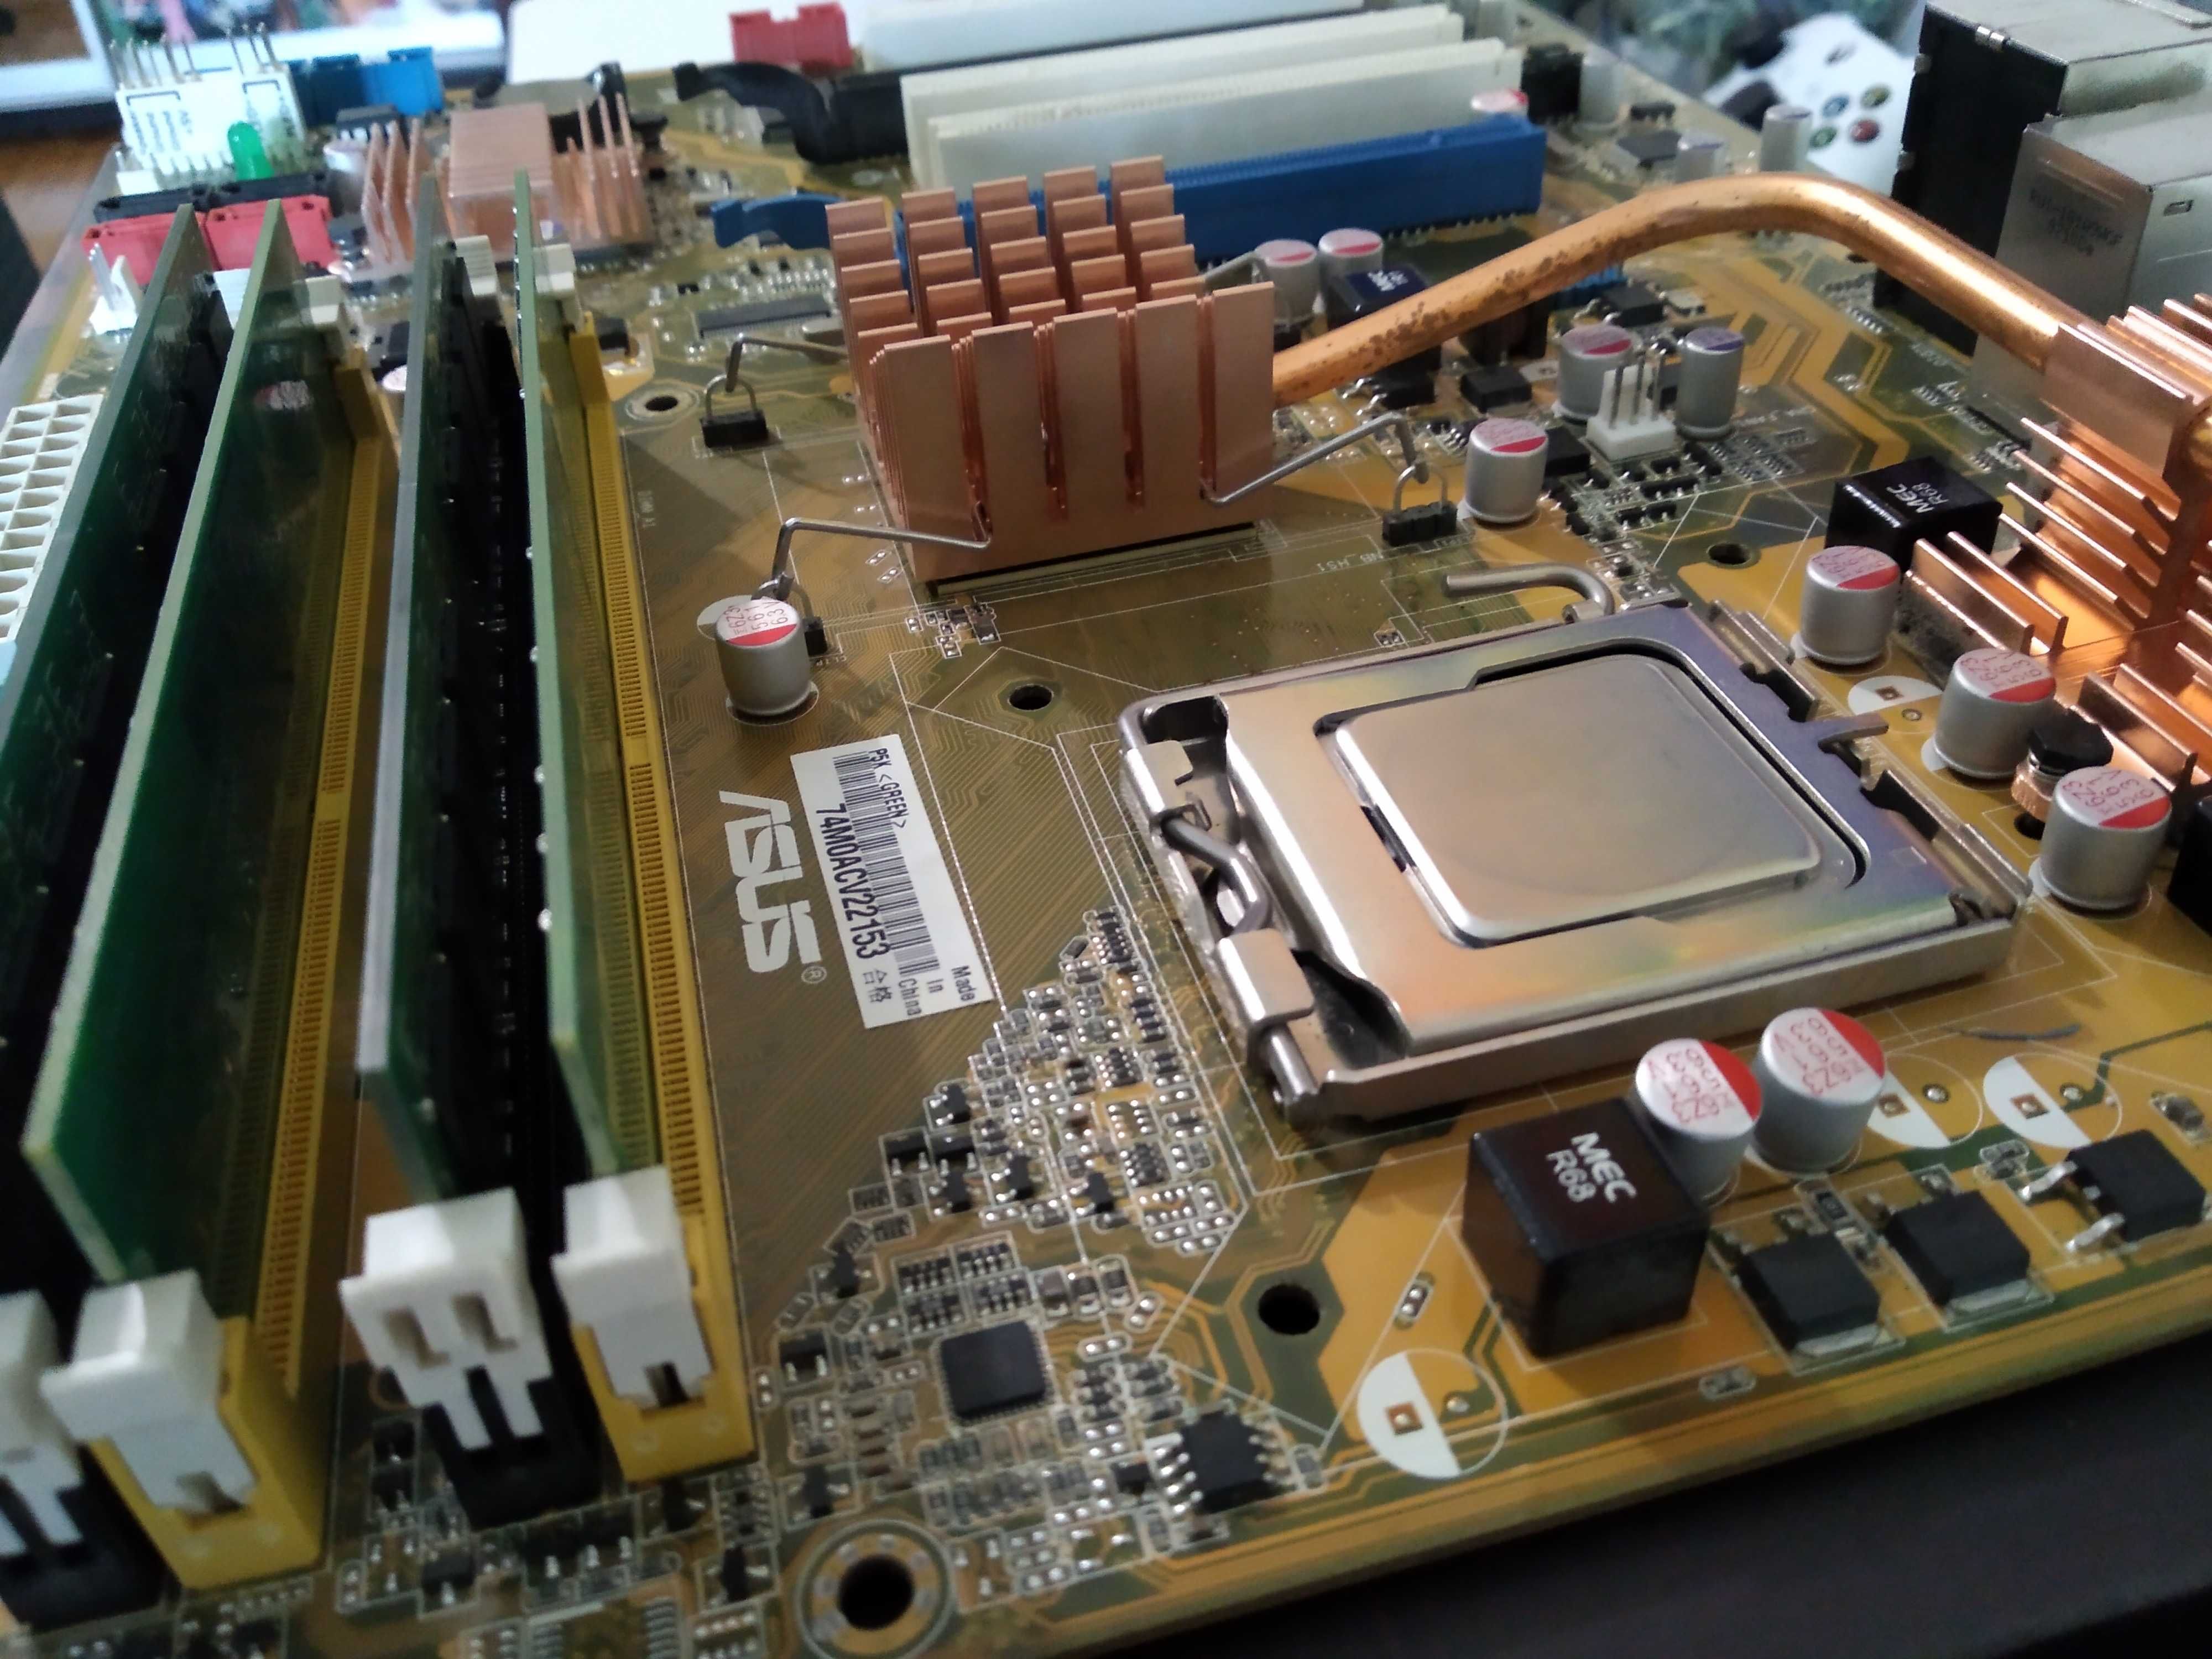 Asus p5k (motherboard), lga 775 + CPU core 2 duo E8500 + 4×1 gb -ddr2